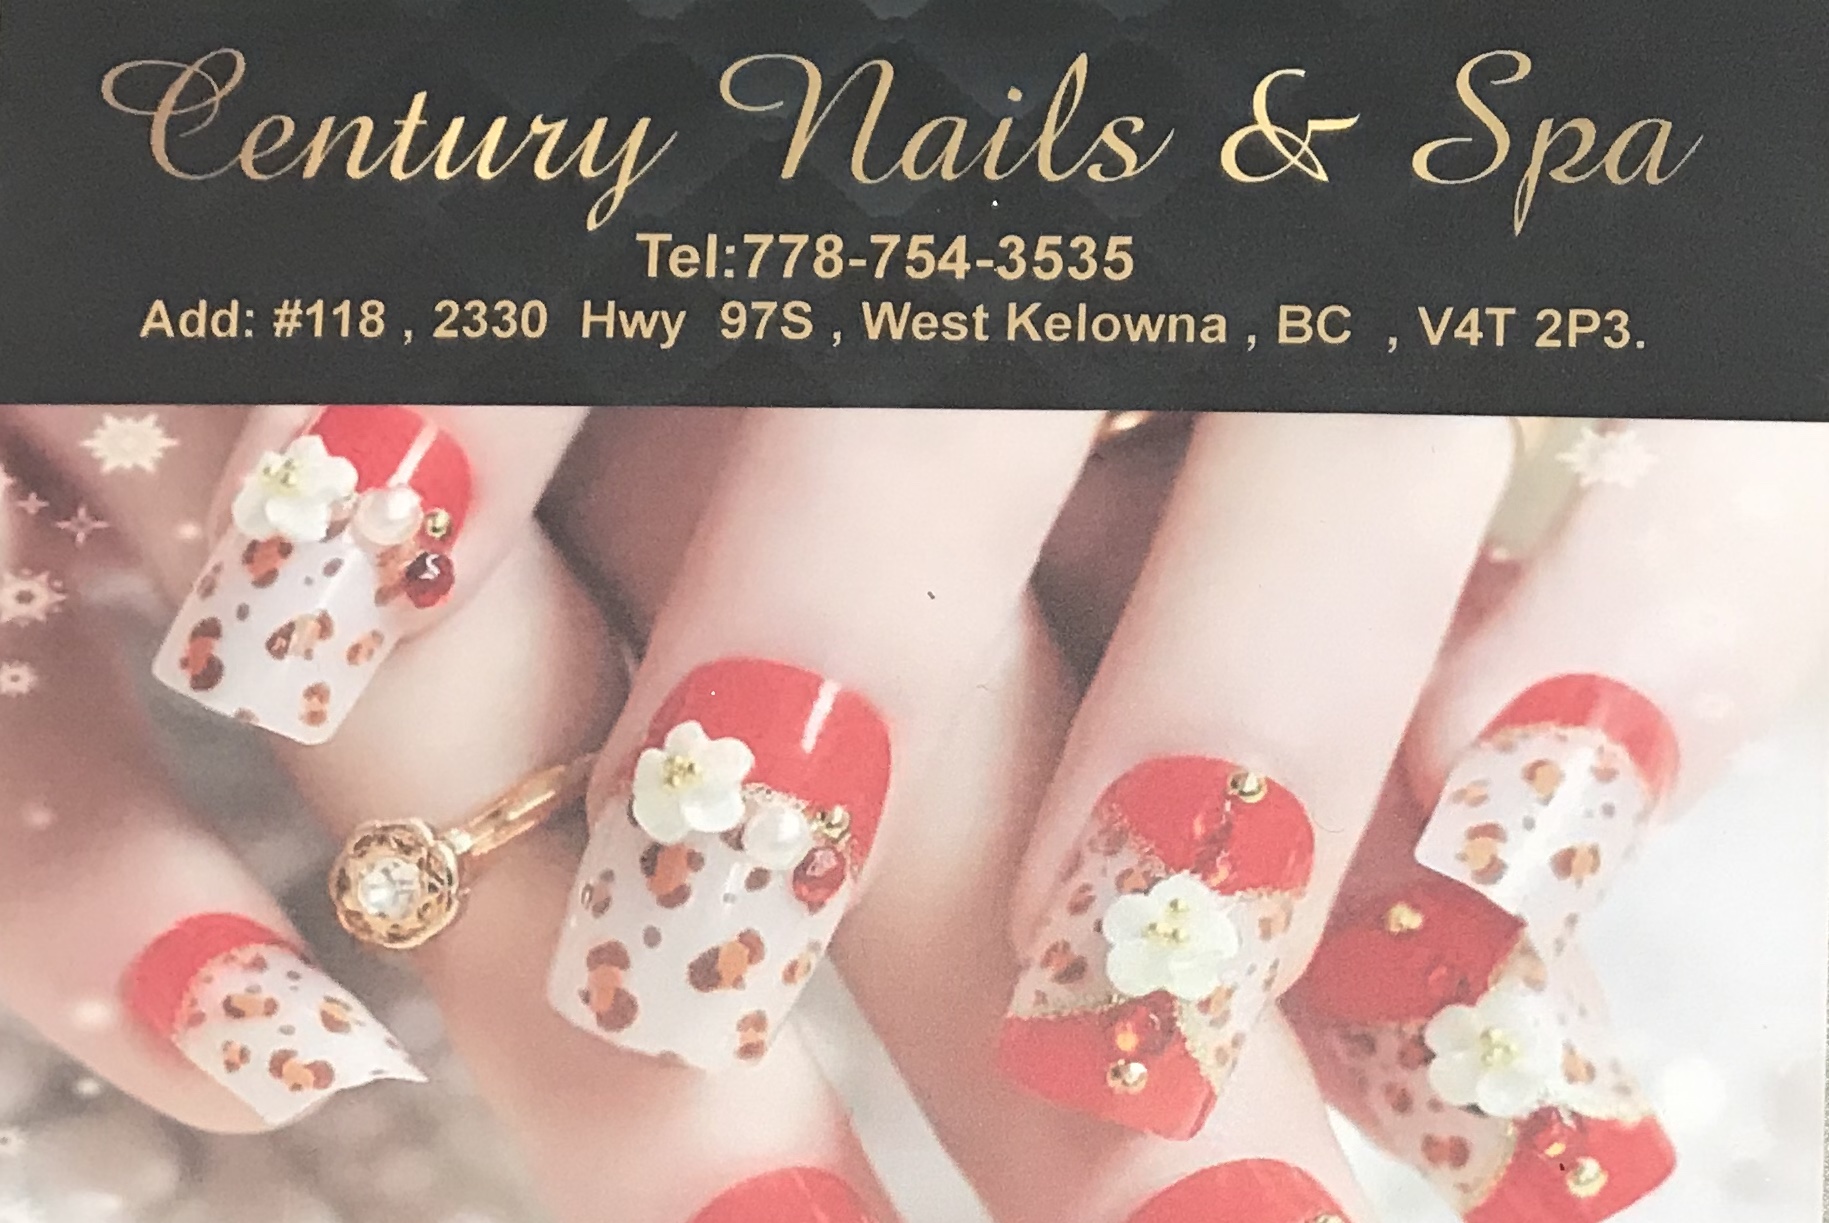 Century nails & spa